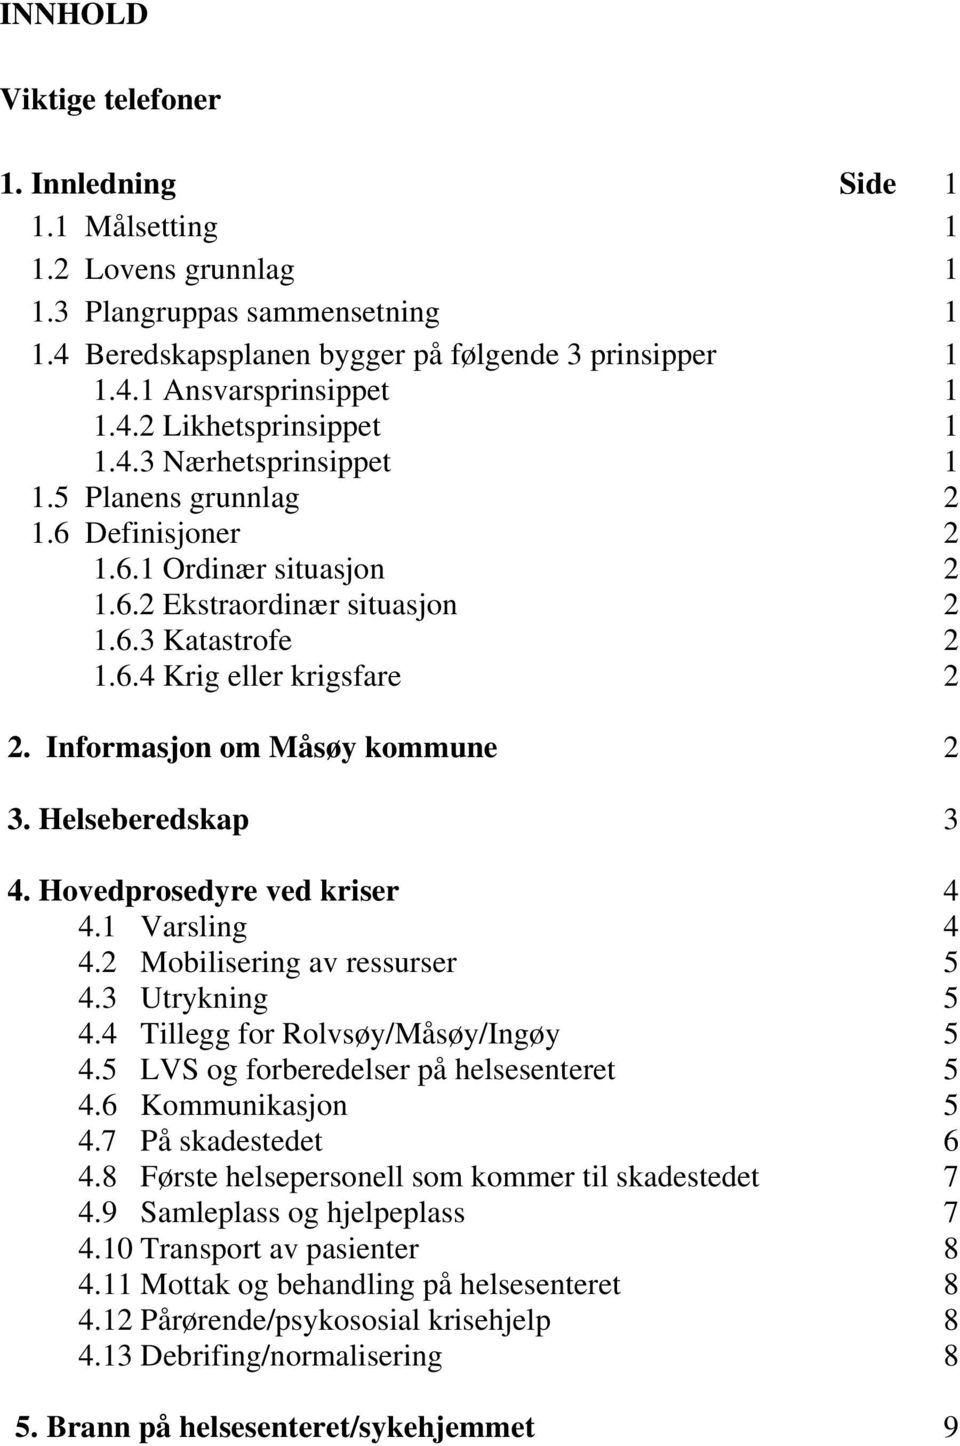 Informasjon om Måsøy kommune 2 3. Helseberedskap 3 4. Hovedprosedyre ved kriser 4 4.1 Varsling 4 4.2 Mobilisering av ressurser 5 4.3 Utrykning 5 4.4 Tillegg for Rolvsøy/Måsøy/Ingøy 5 4.